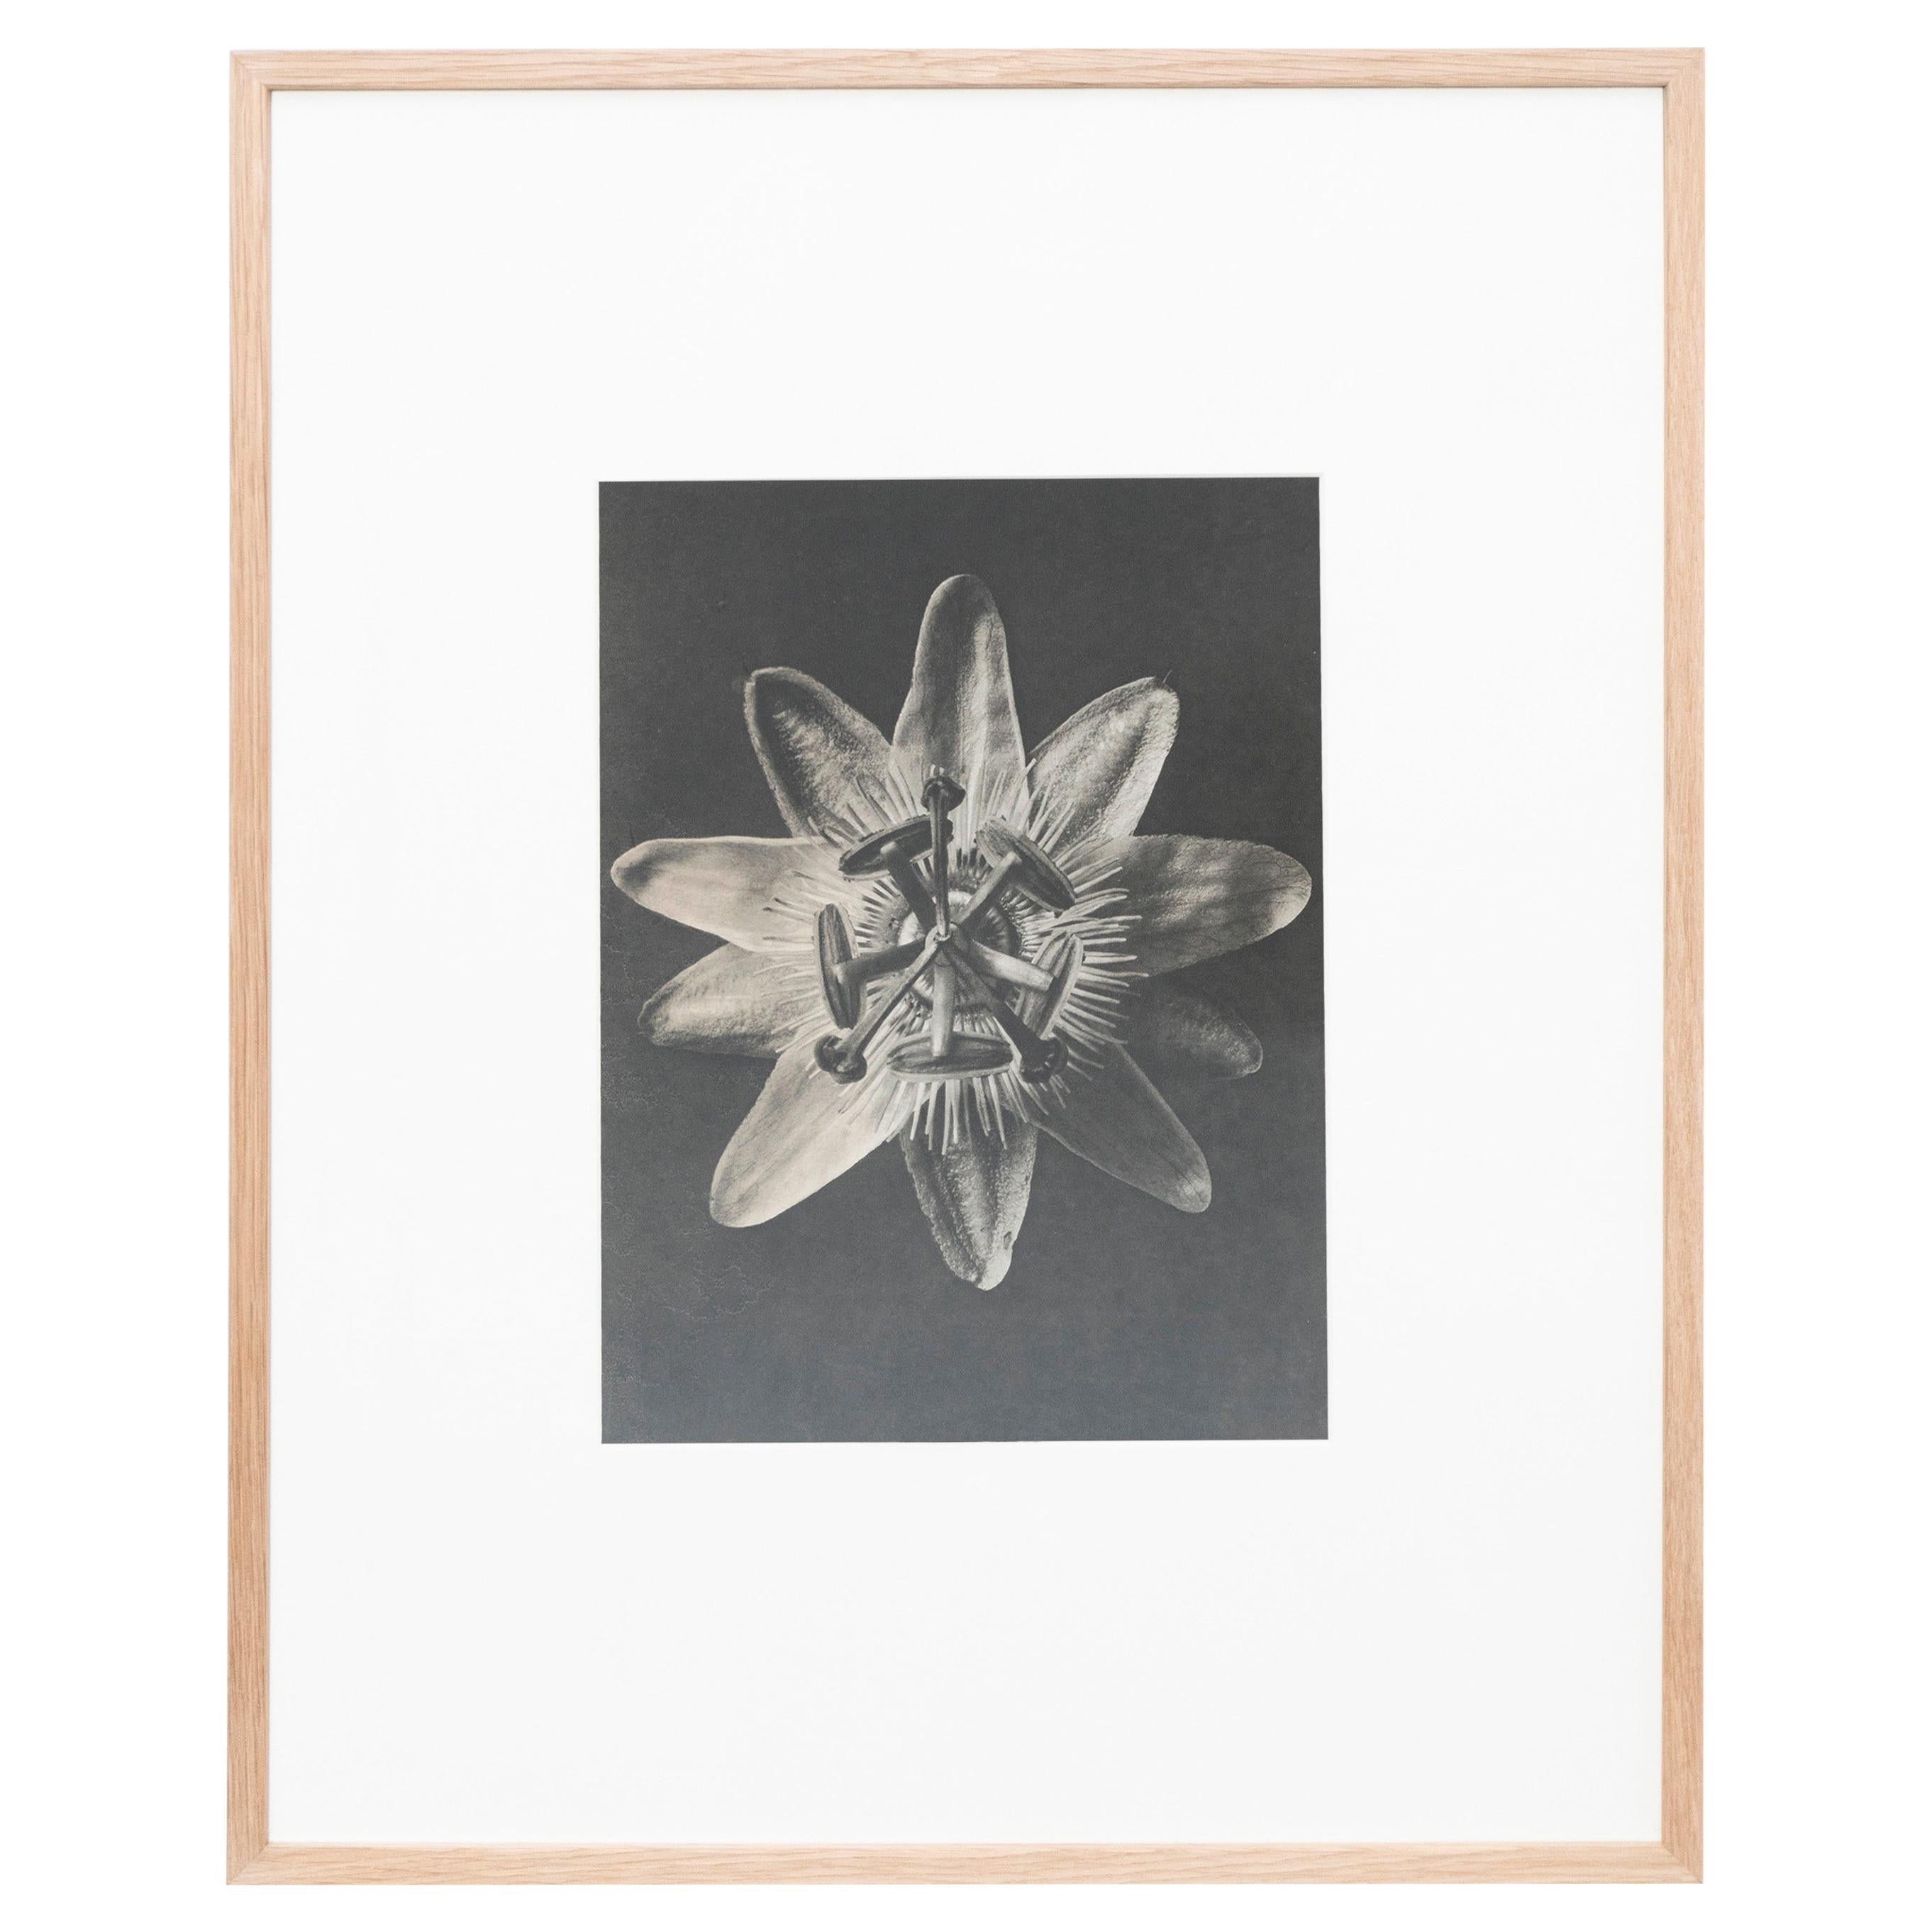 Karl Blossfeldt Black White Flower Photogravure Botanic Photography, 1942 For Sale